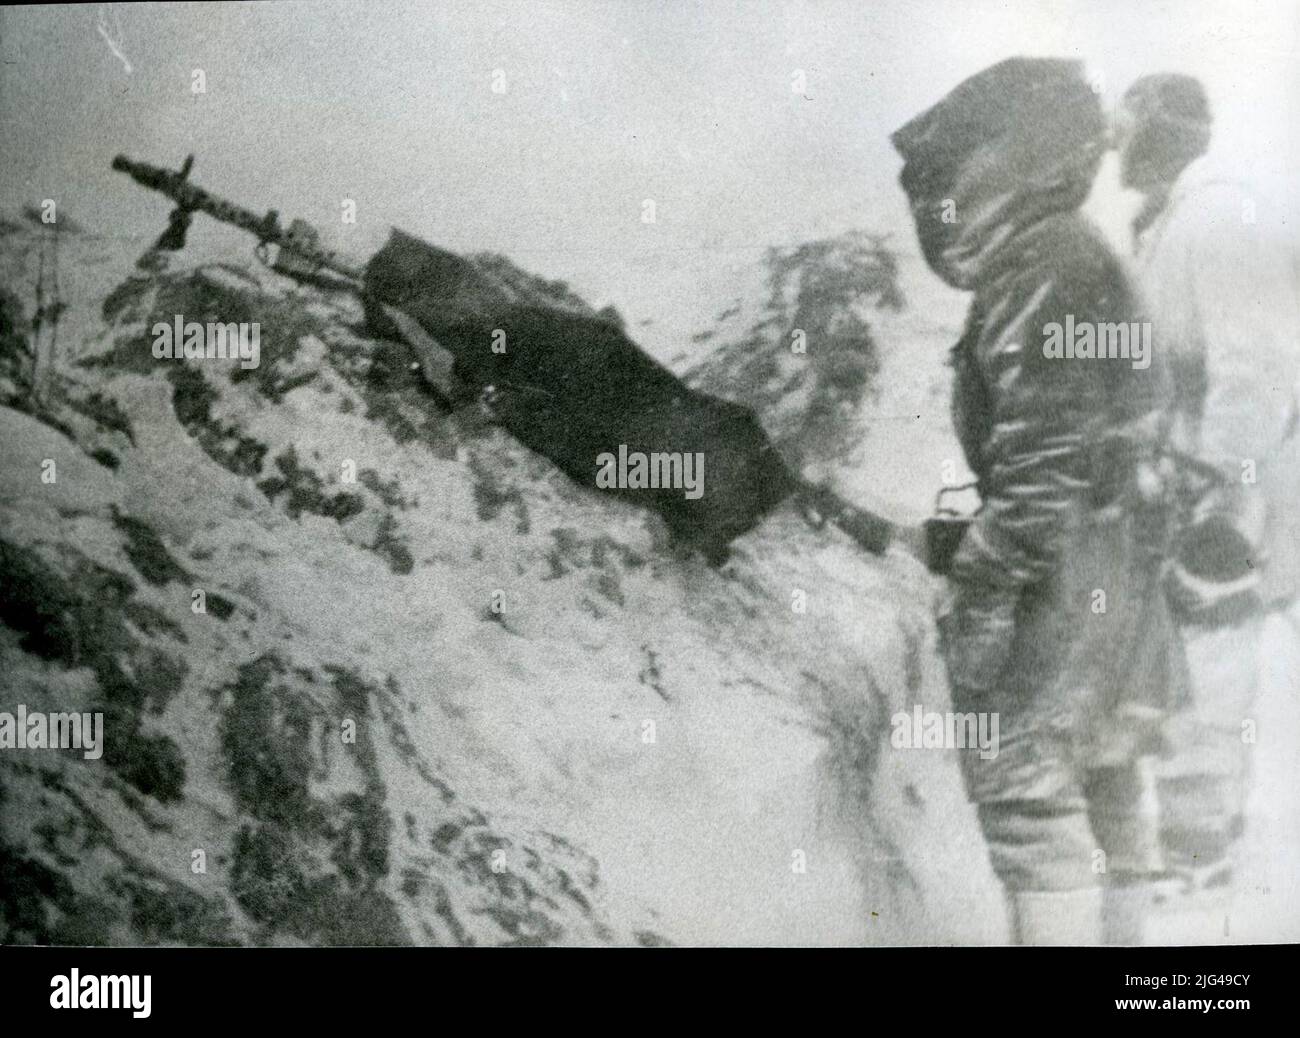 Posizione di tiro di una pistola leggera Mg34. Poligono di tiro di una mitragliatrice leggera mg 34, il suo meccanismo è protetto con una tela contro il freddo d'inverno. Foto Stock